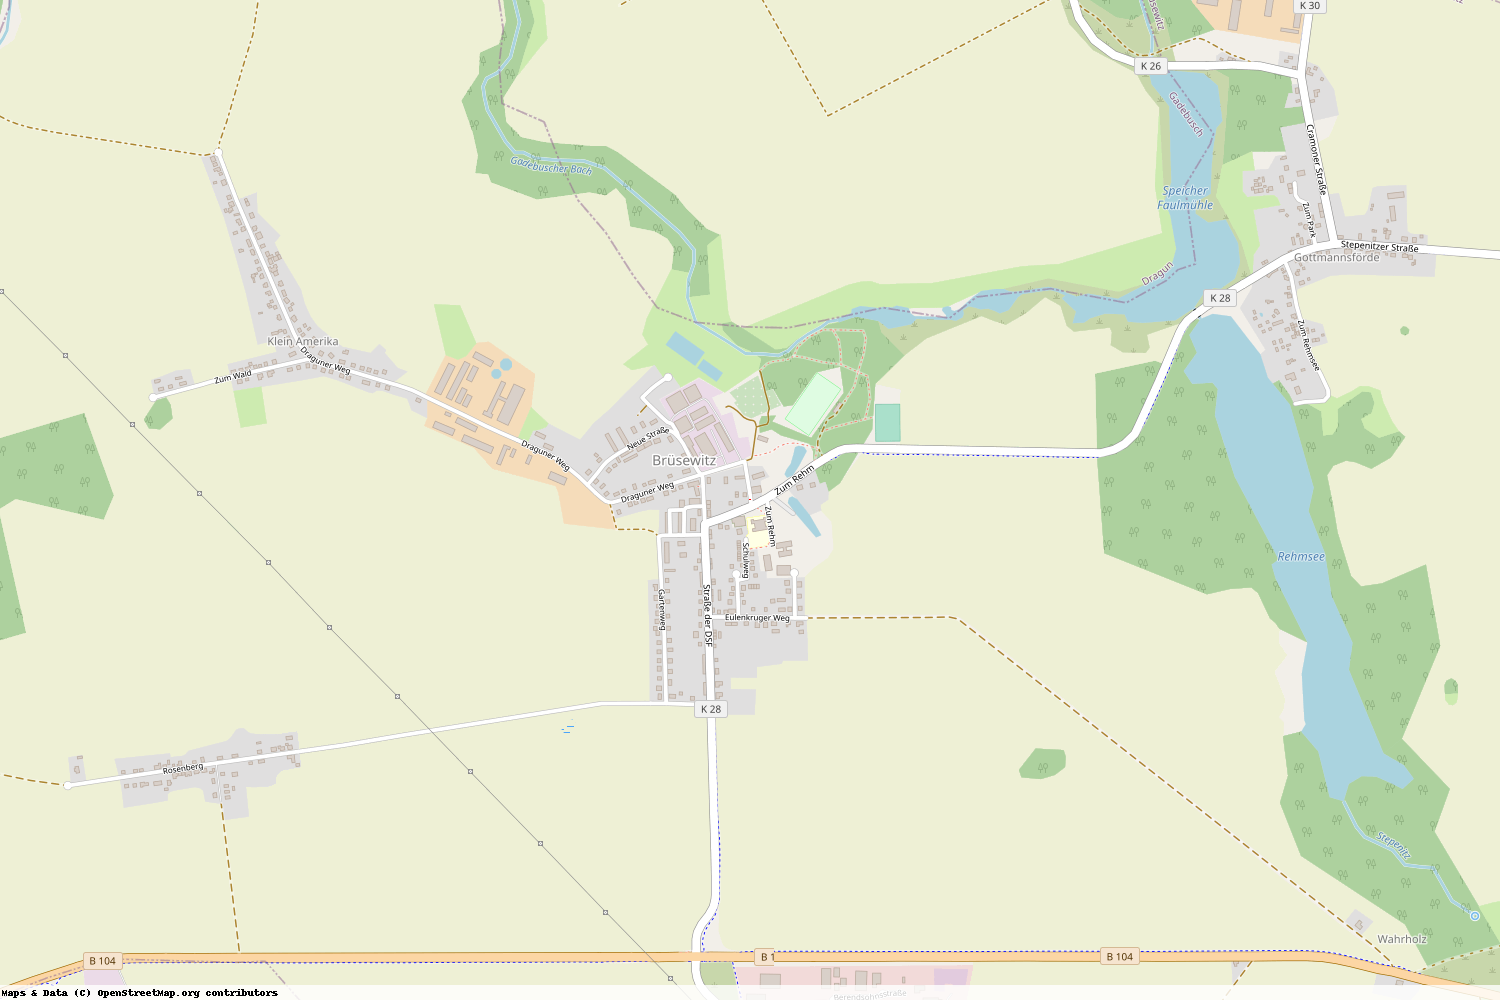 Ist gerade Stromausfall in Mecklenburg-Vorpommern - Nordwestmecklenburg - Brüsewitz?